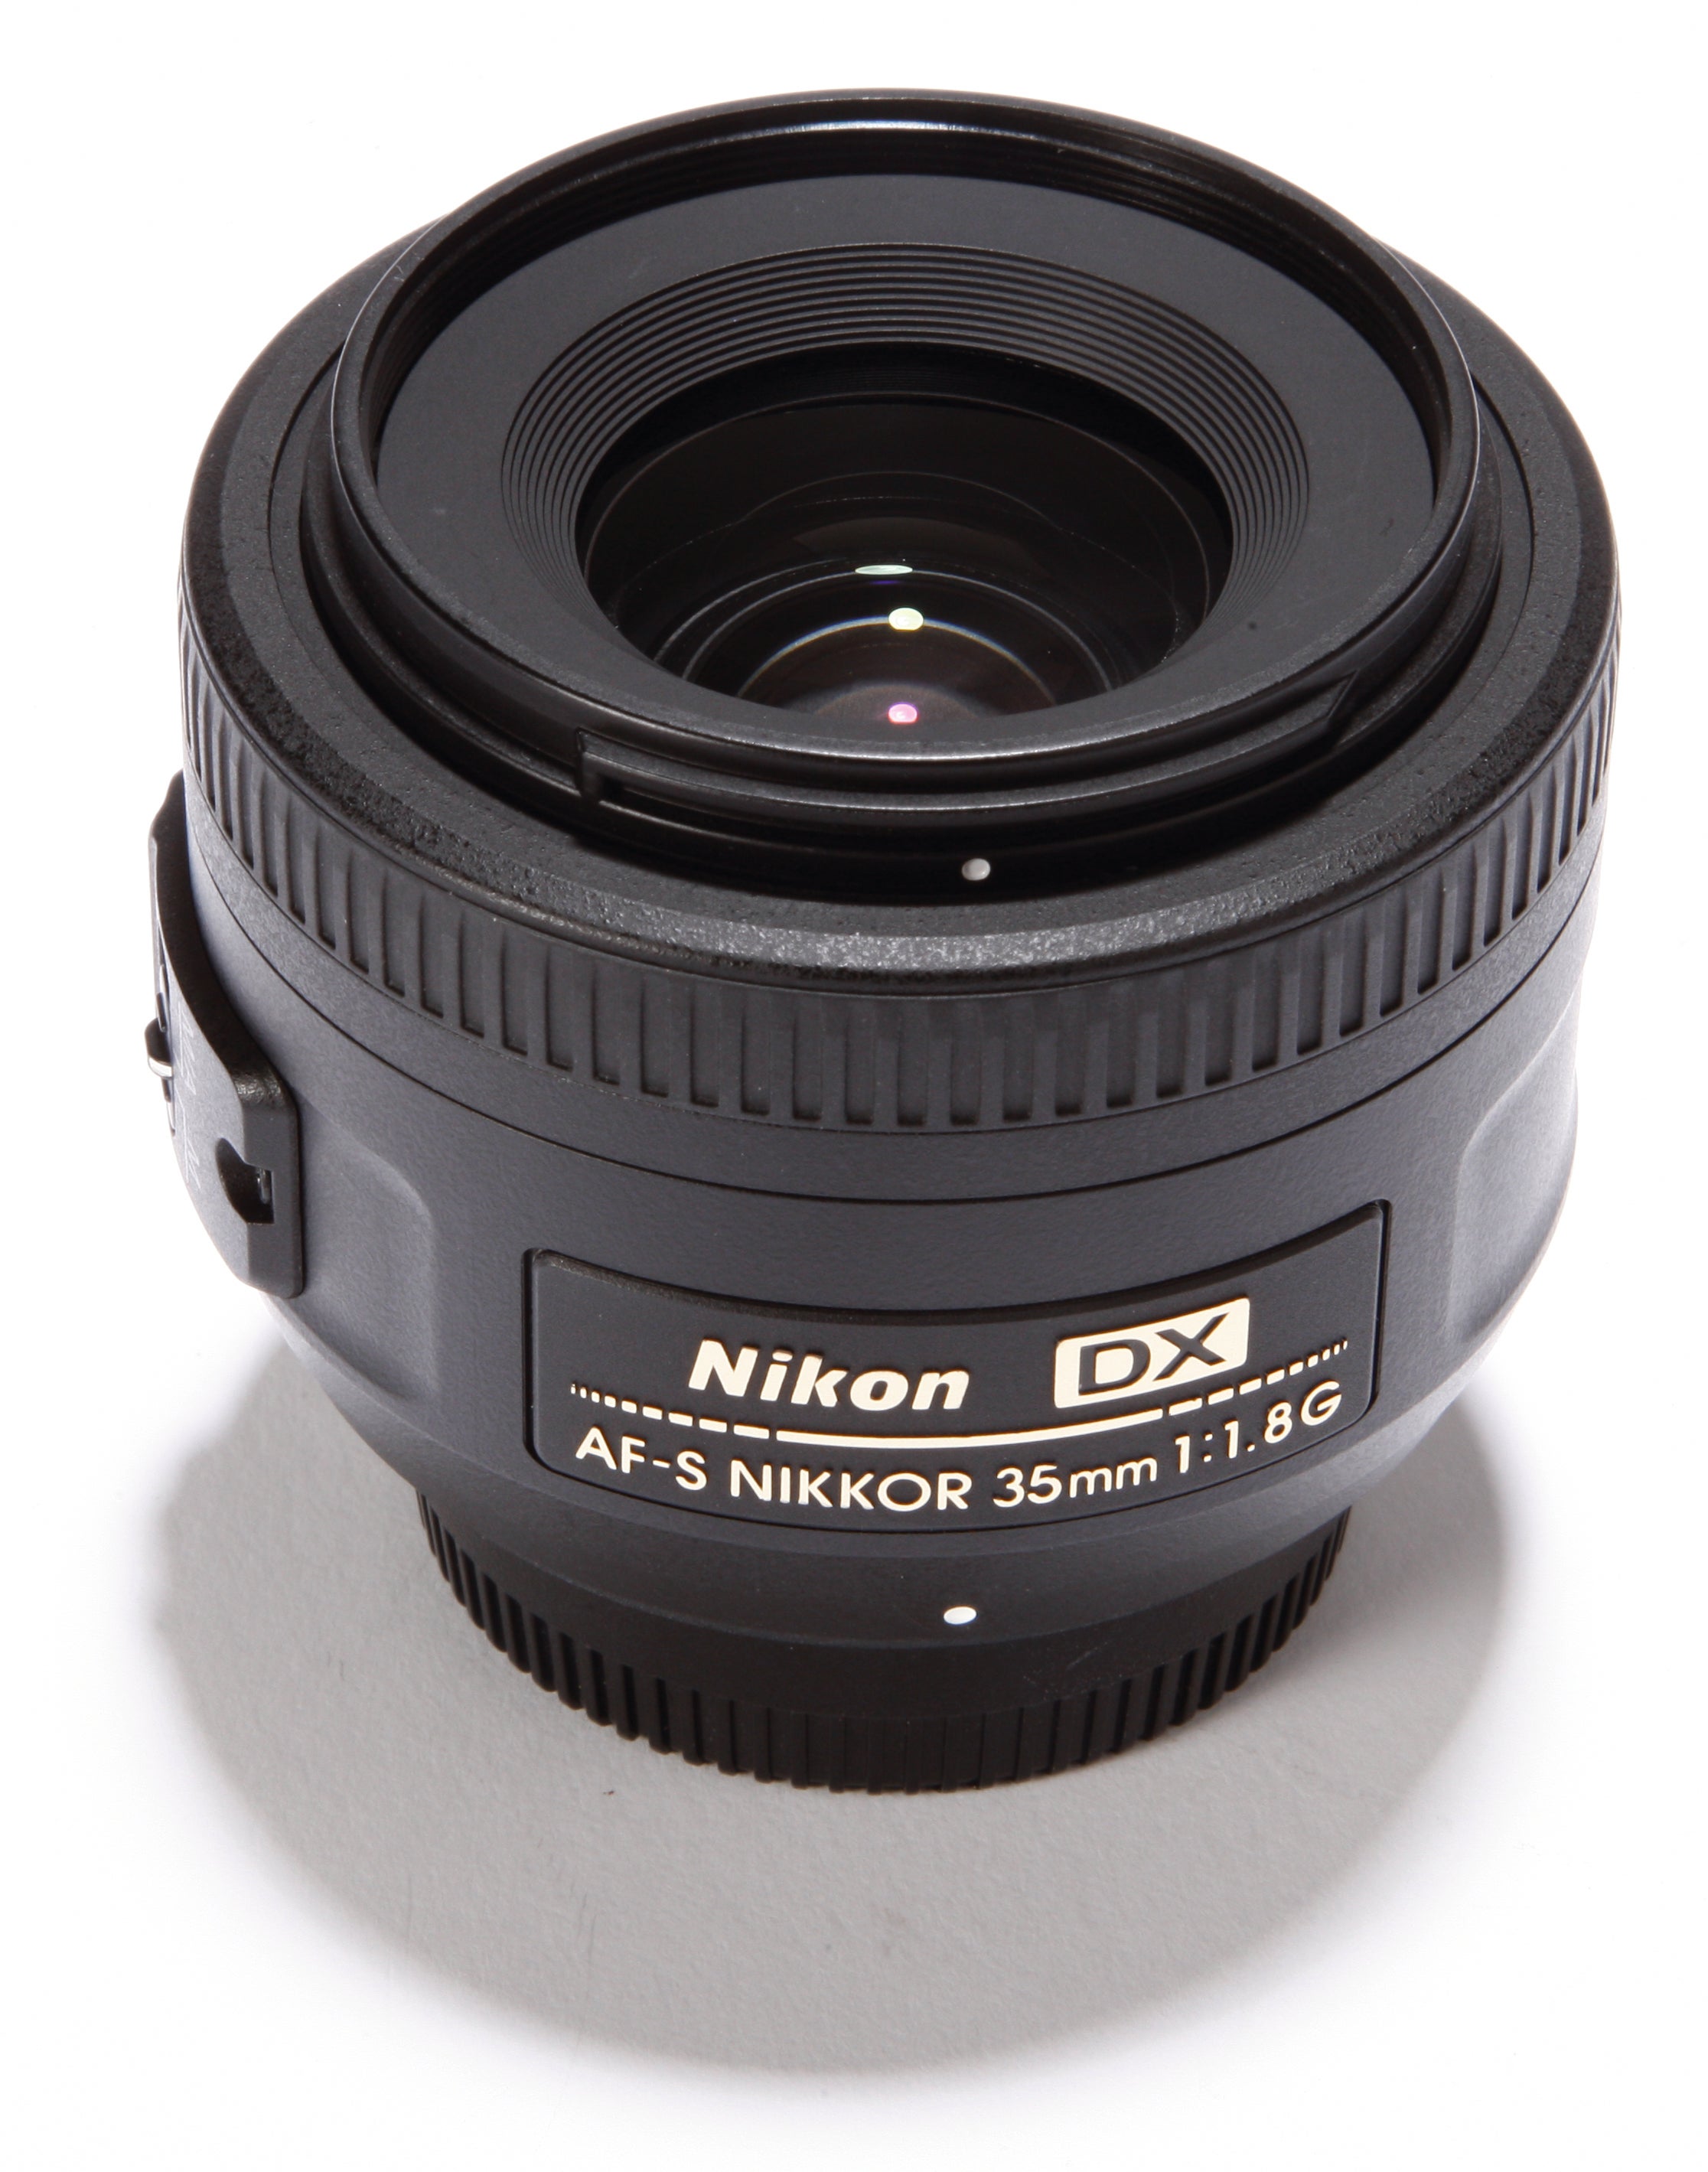 Nikon AF-S DX Nikkor 35mm f/1.8G Lens Review